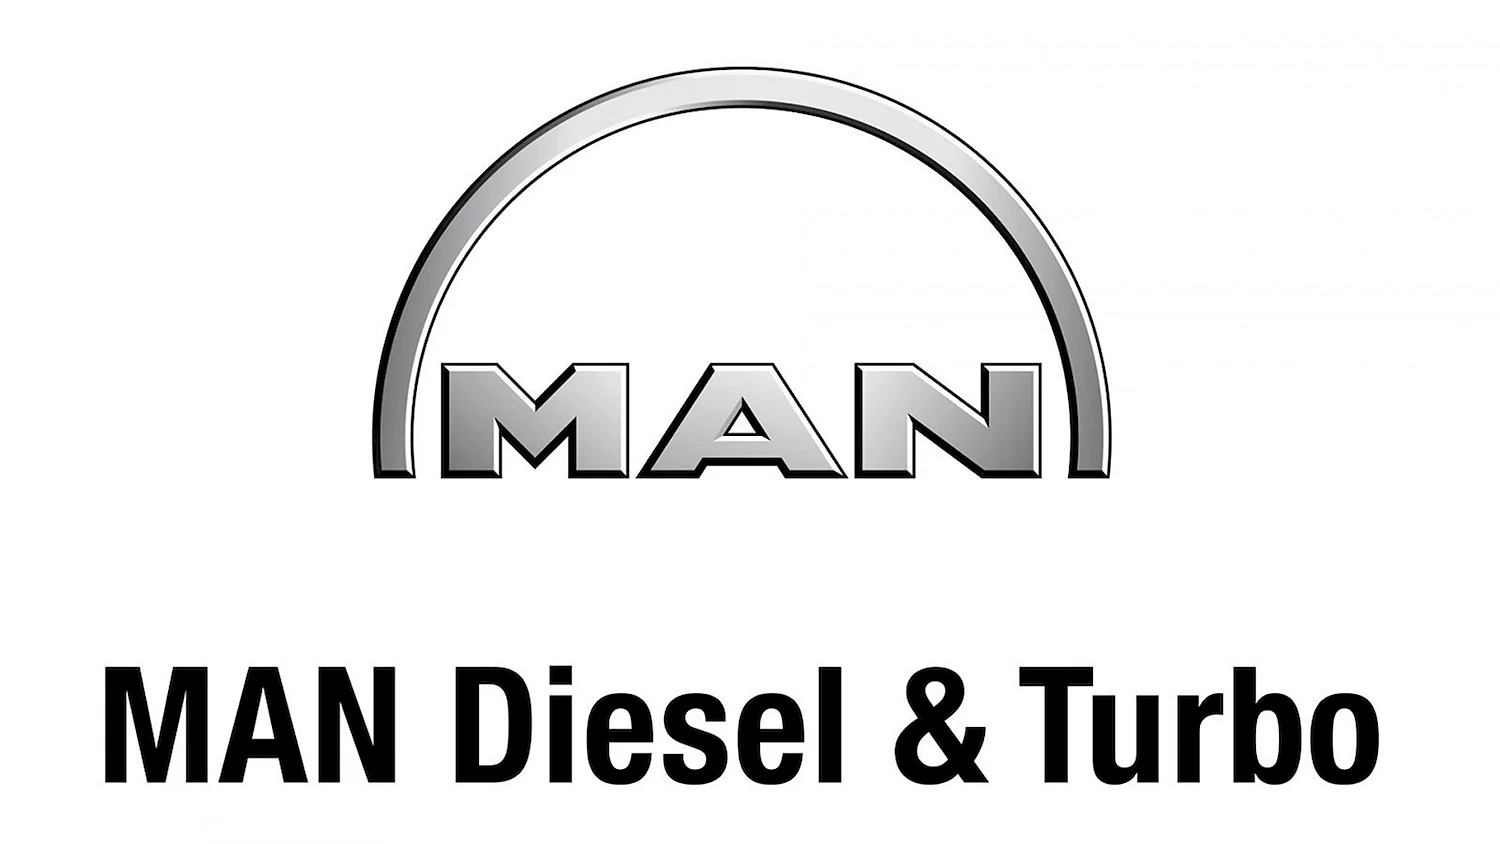 Man Diesel Turbo